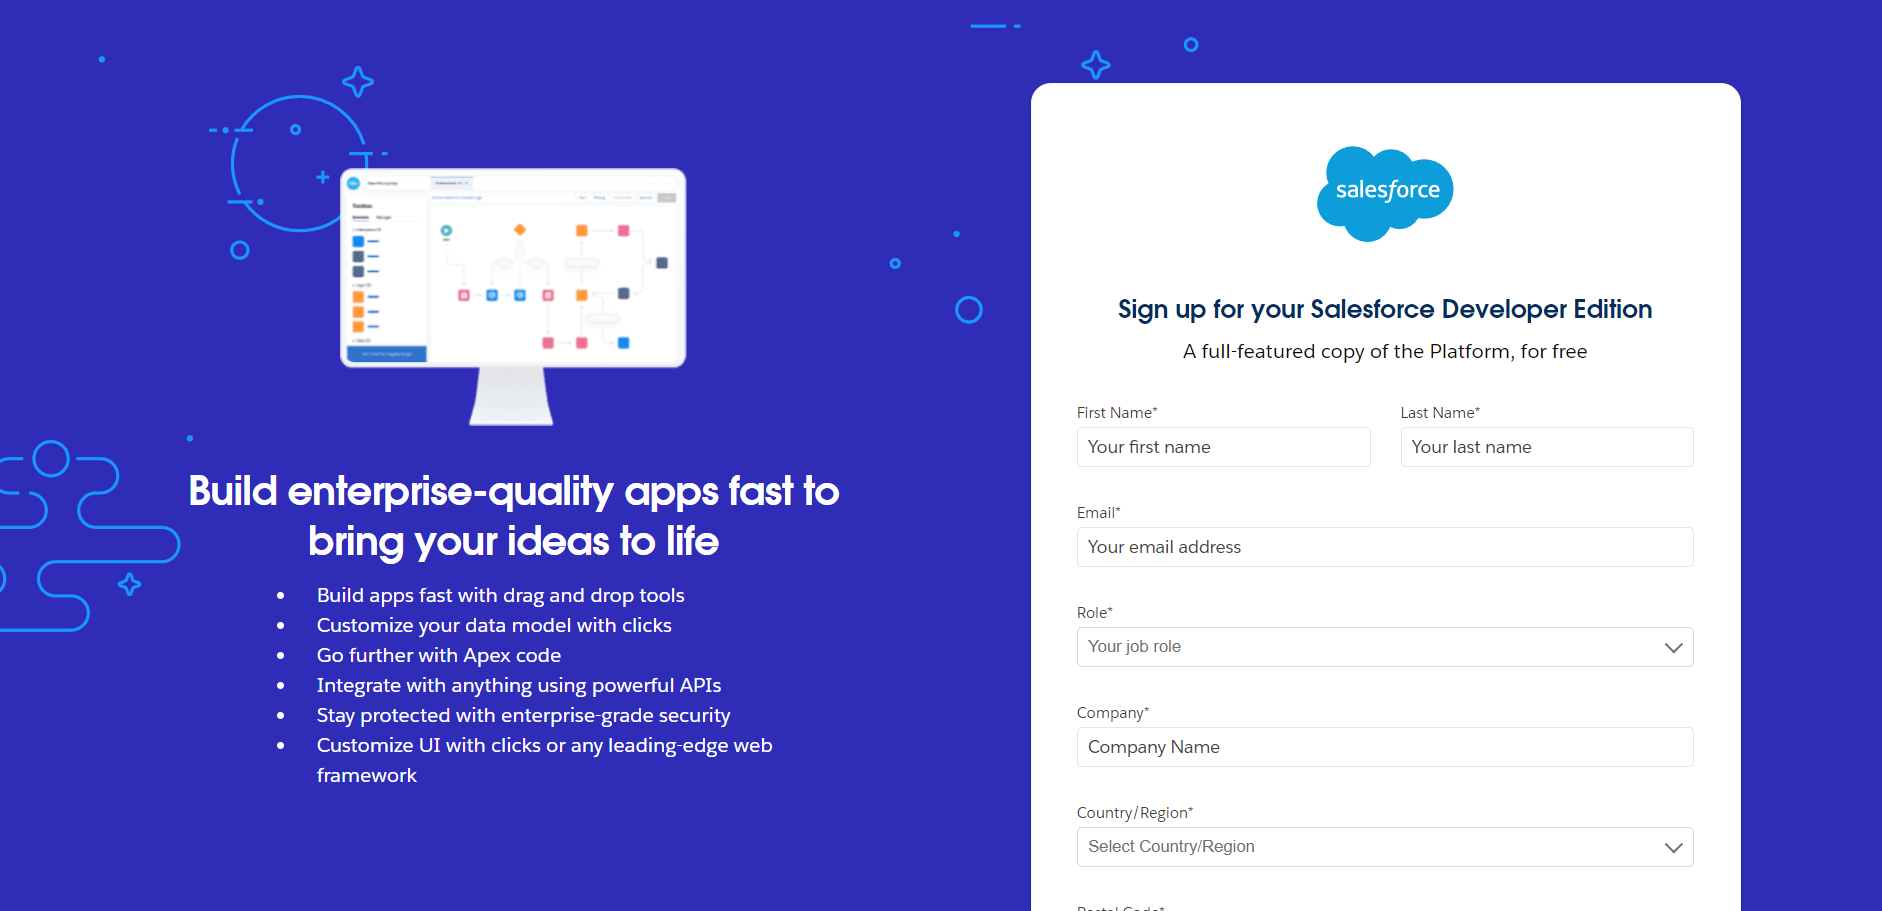 L'objectif principal de ce blog est de vous familiariser avec la création gratuite de comptes de développeur Salesforce.